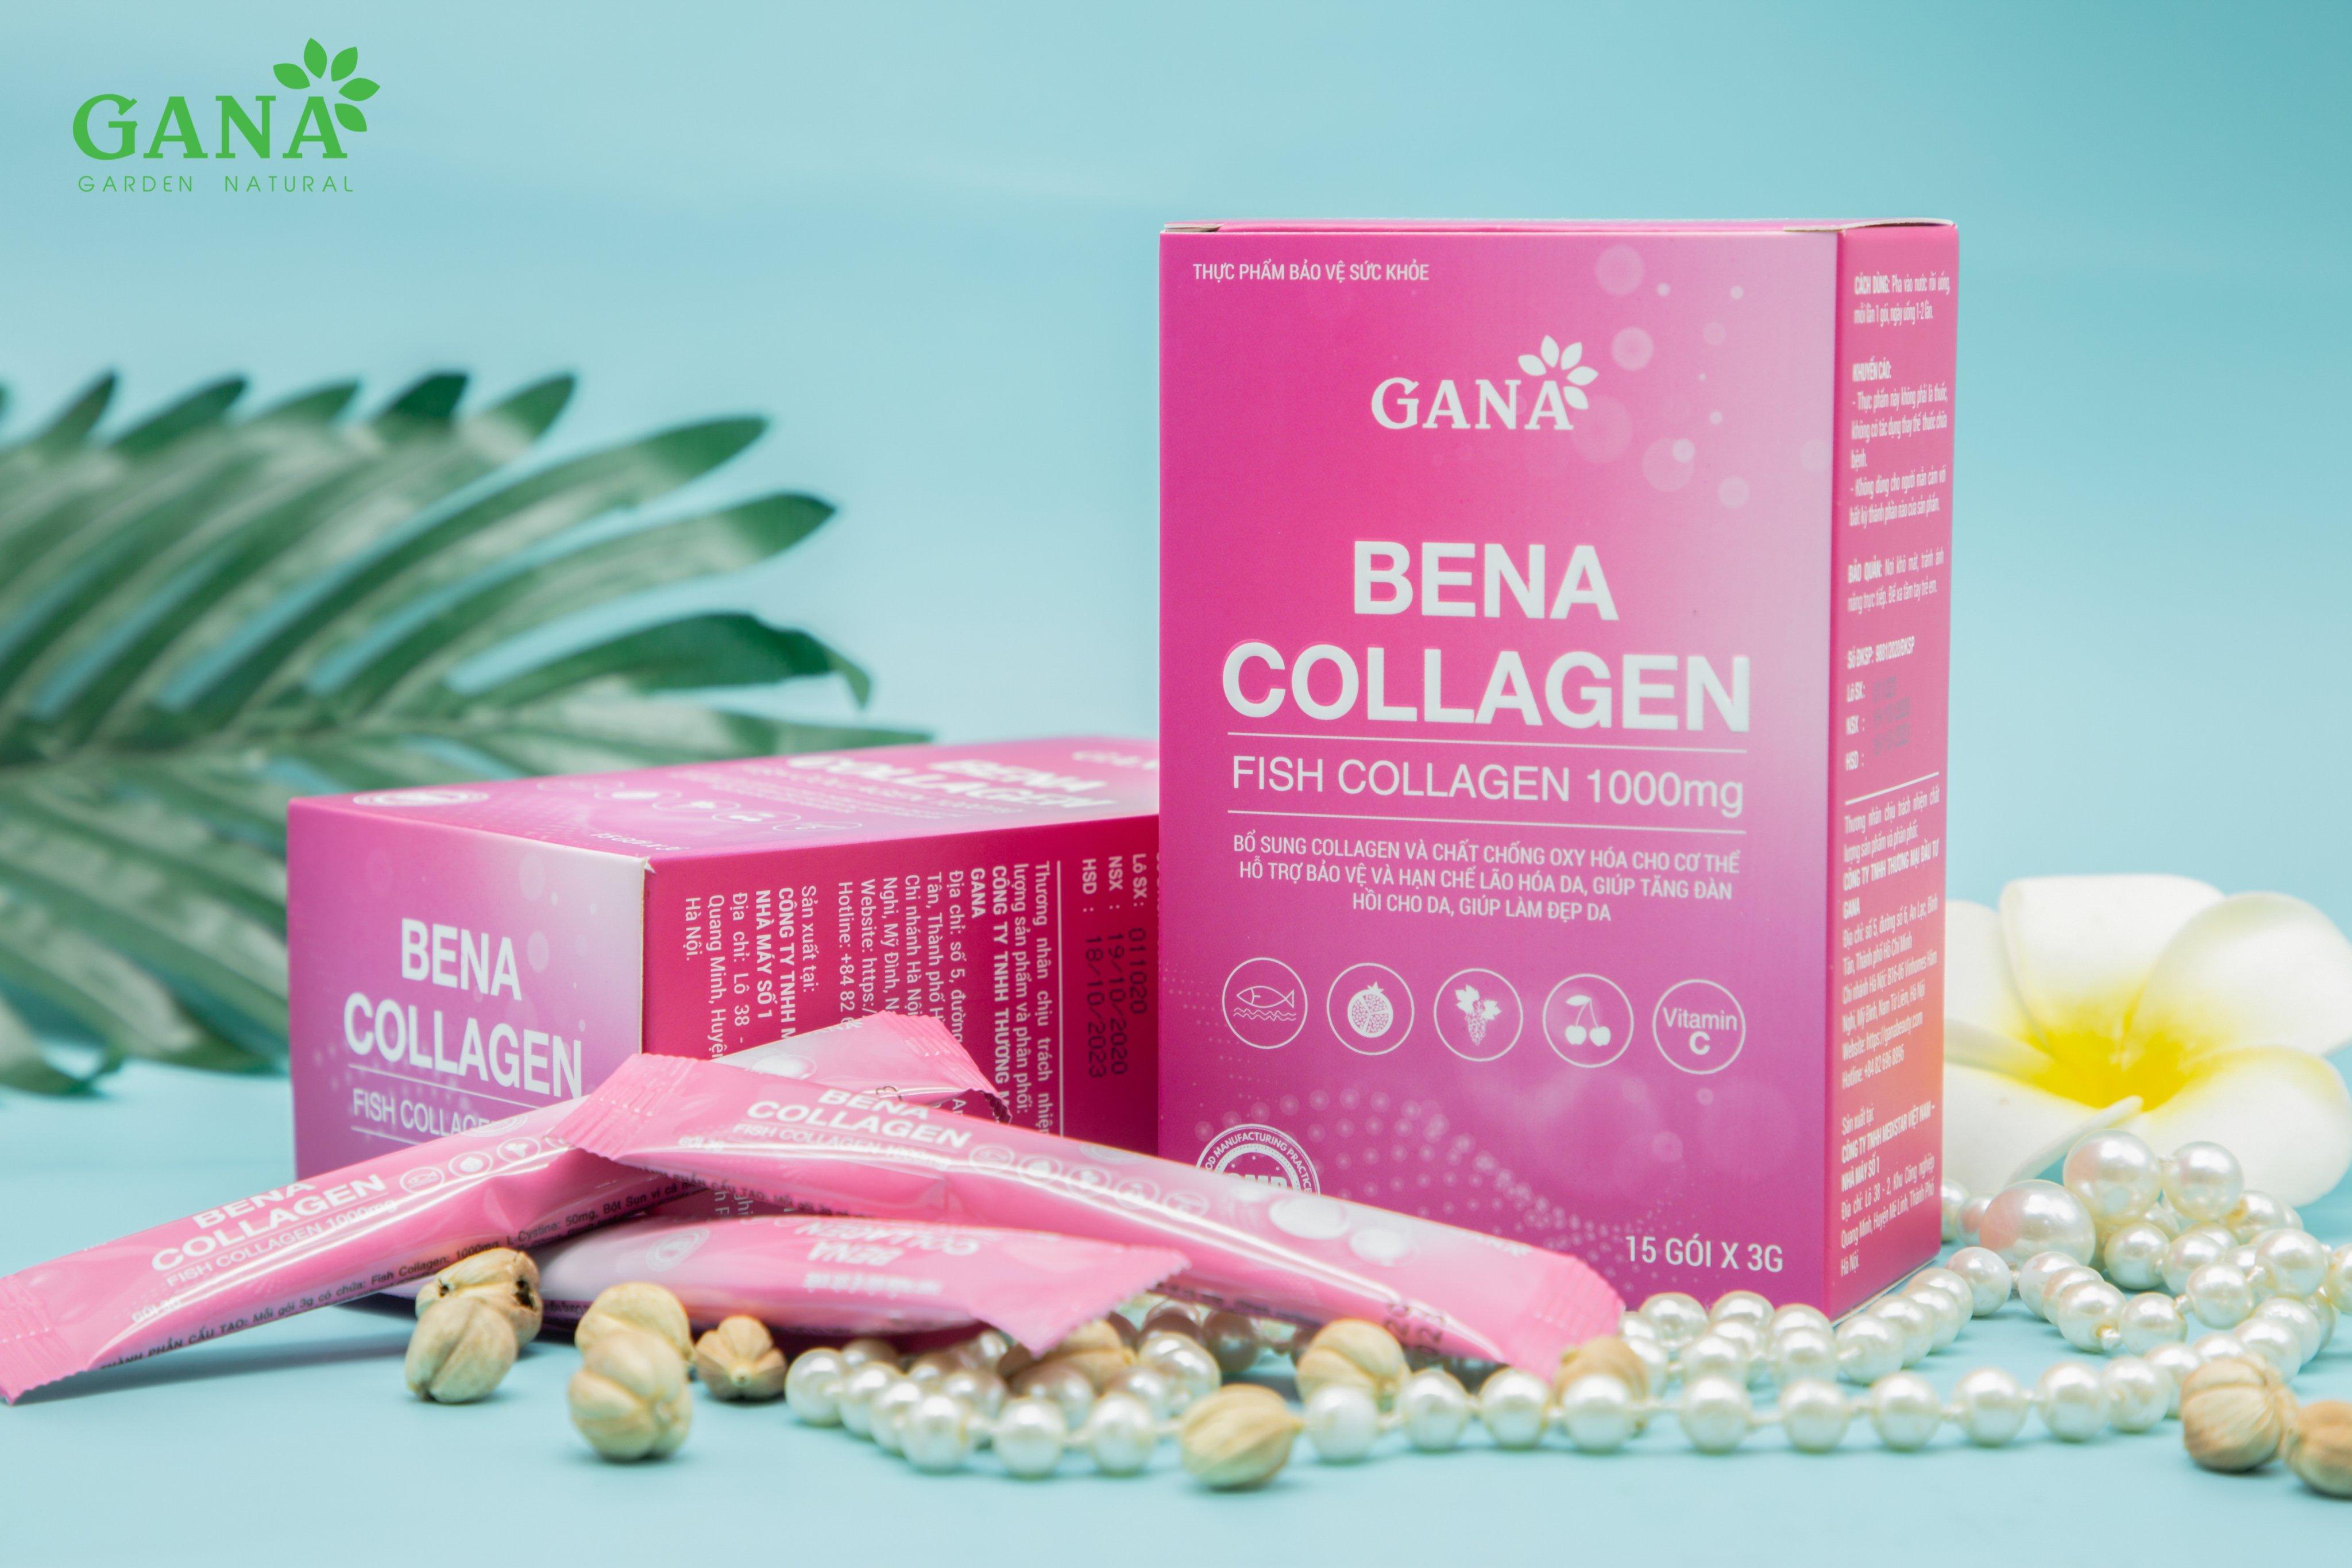 Thời điểm thích hợp để uống Bena Collagen là khi nào?
